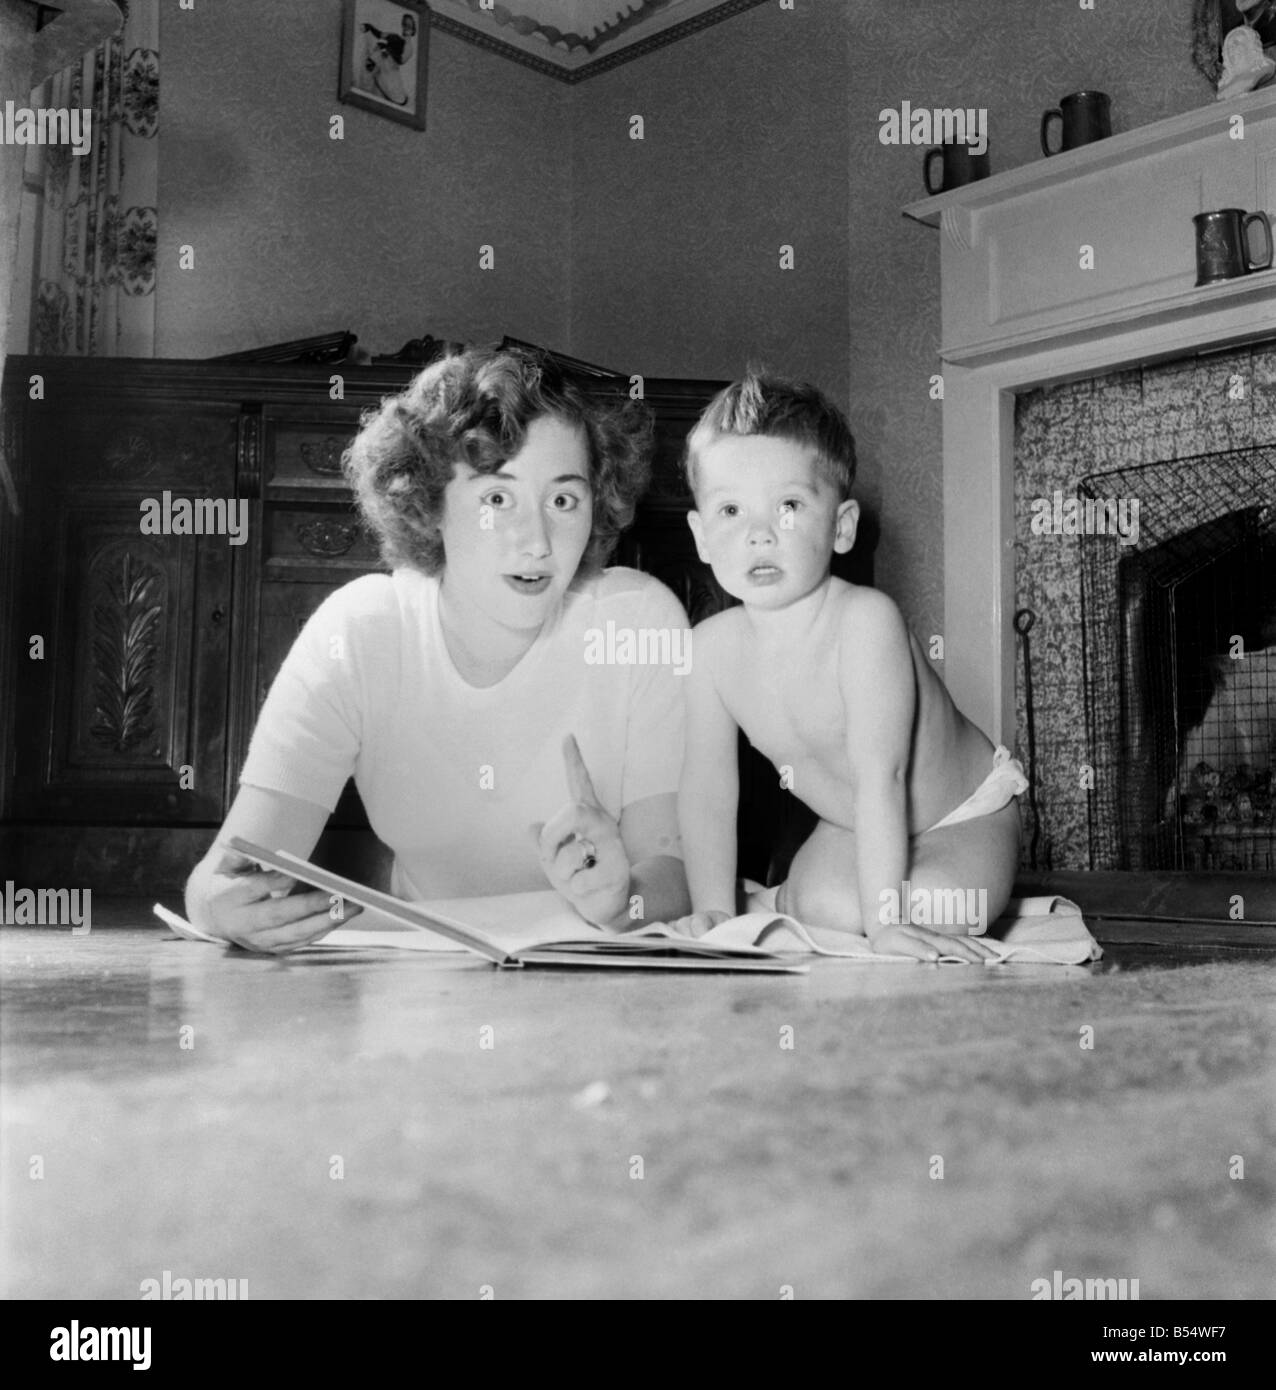 La famille cornichon est une famille solide que ces photo voir maman et papa la formation de poids avec fils Eric. Mère et fils vu lecture Novembre 1953 D6683 Banque D'Images